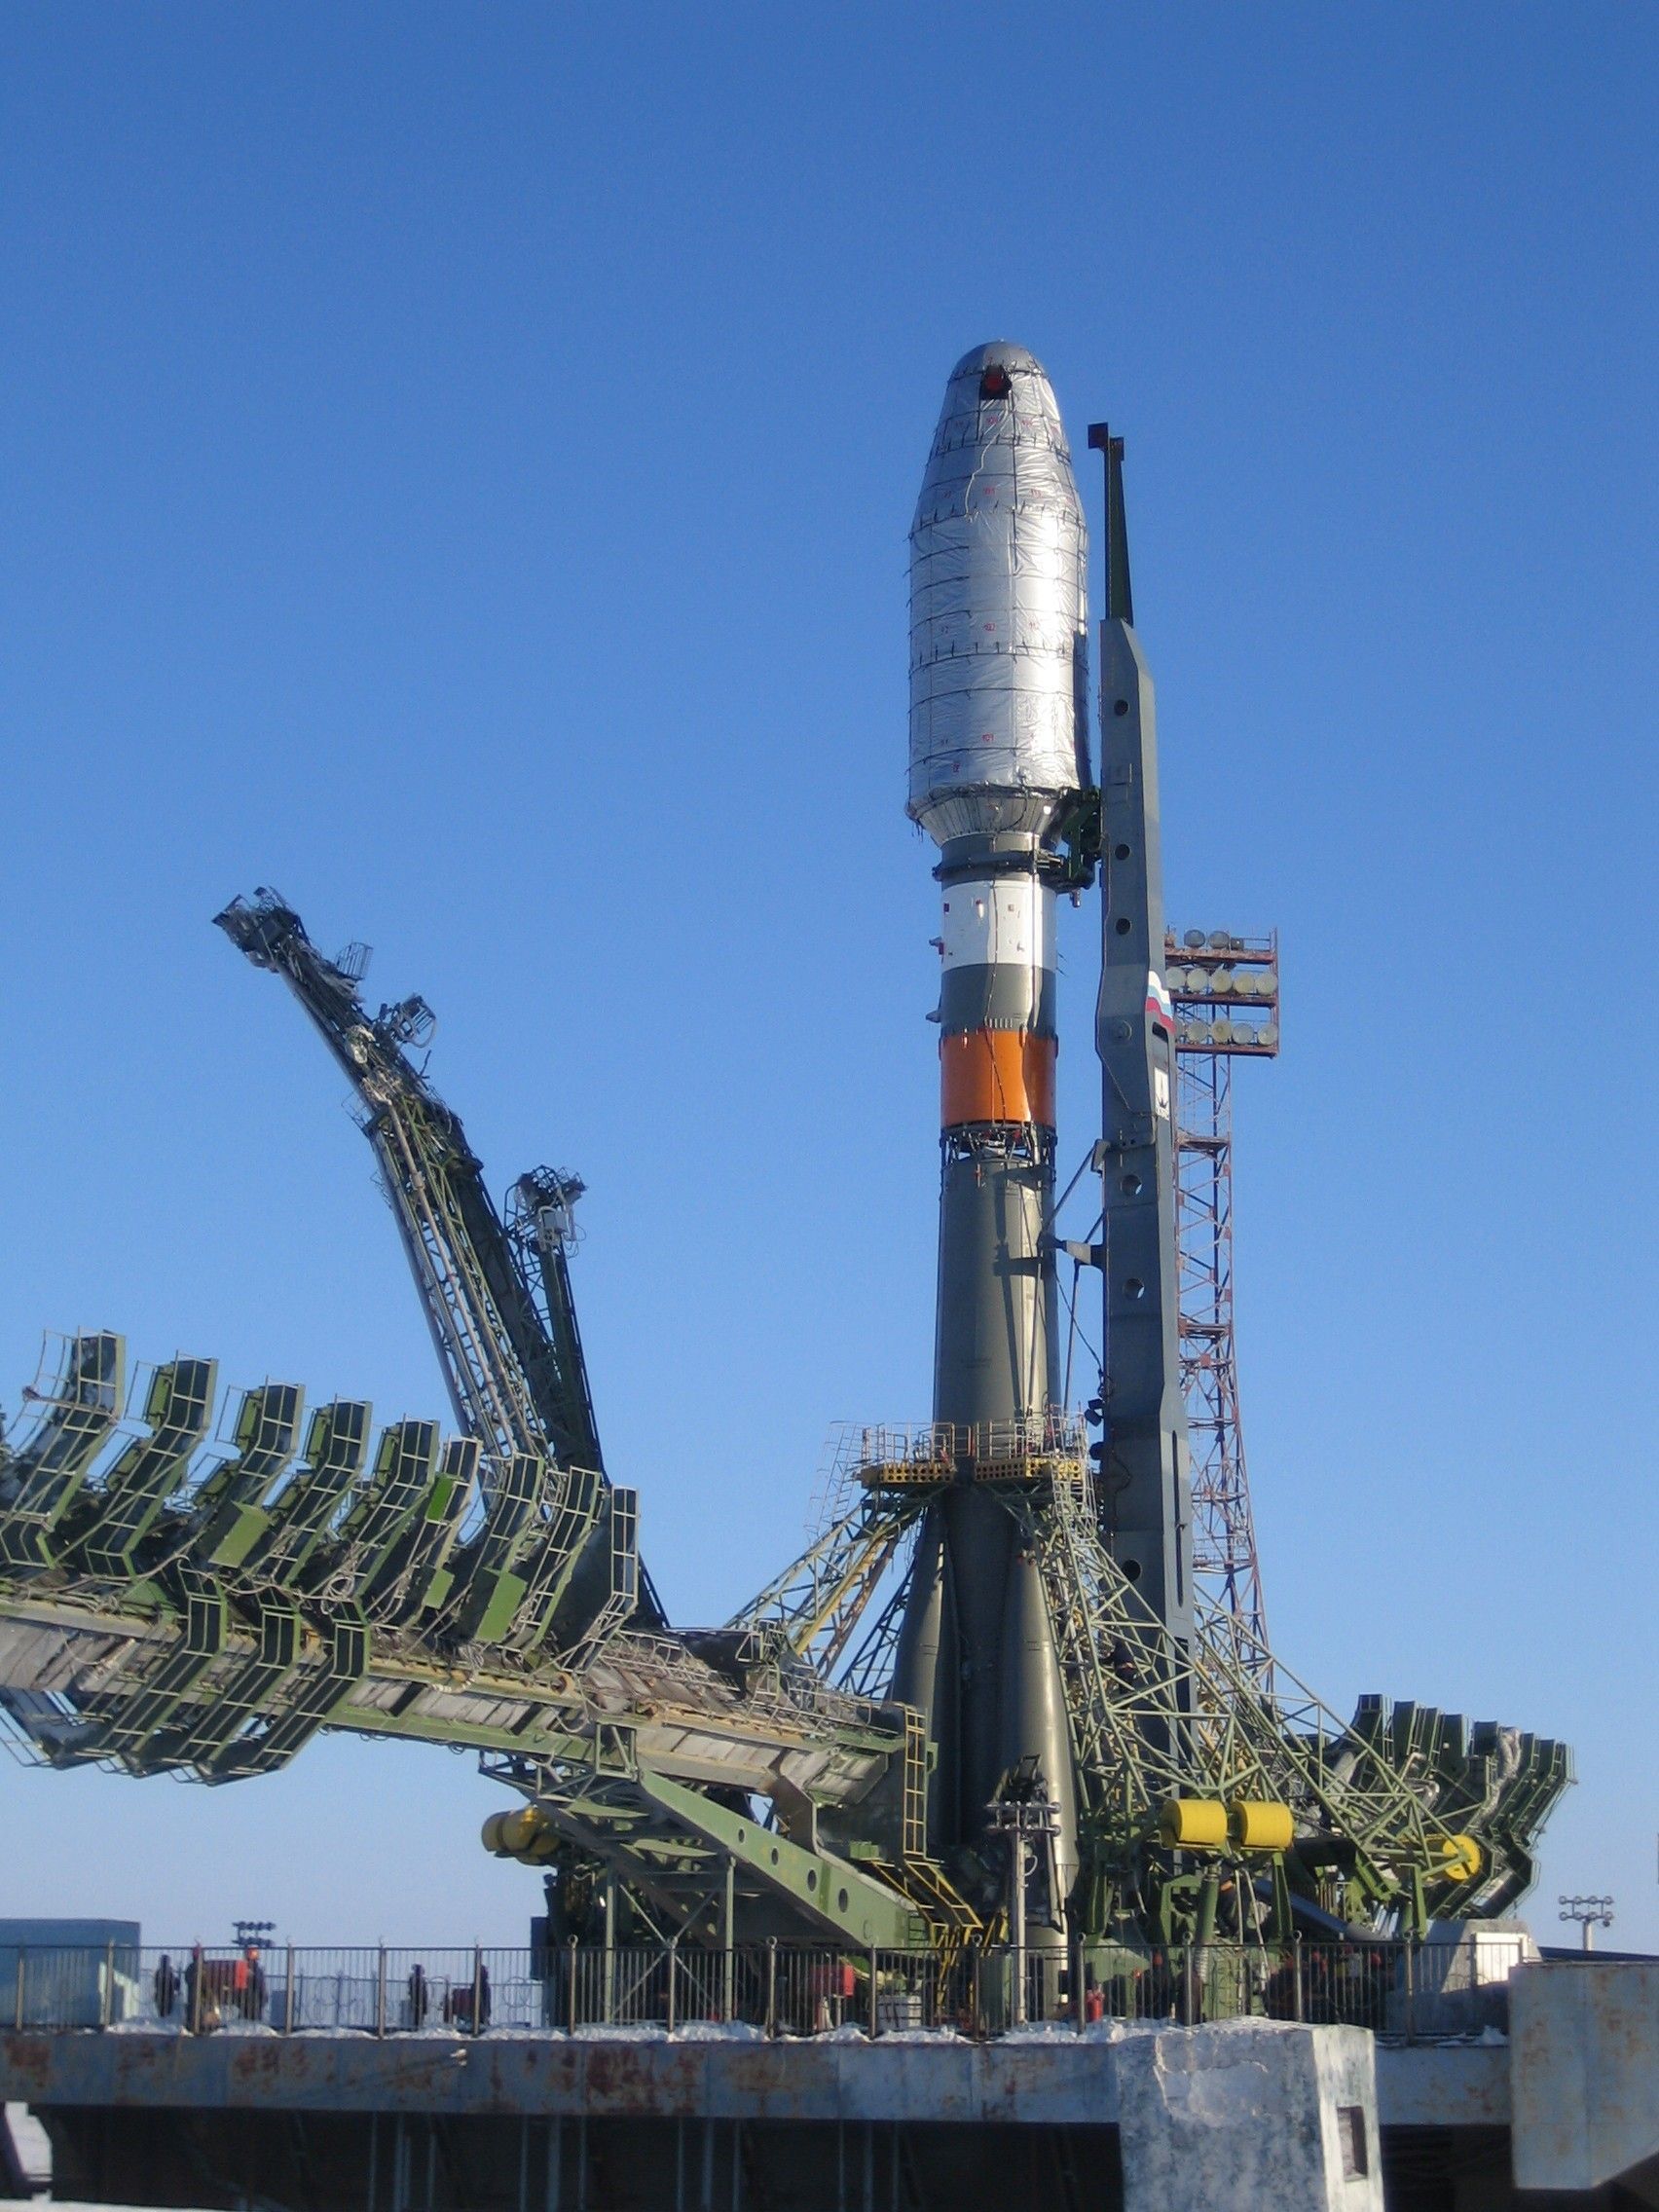 Rakieta nośna Sojuz 2.1a. Fot. Wikipedia